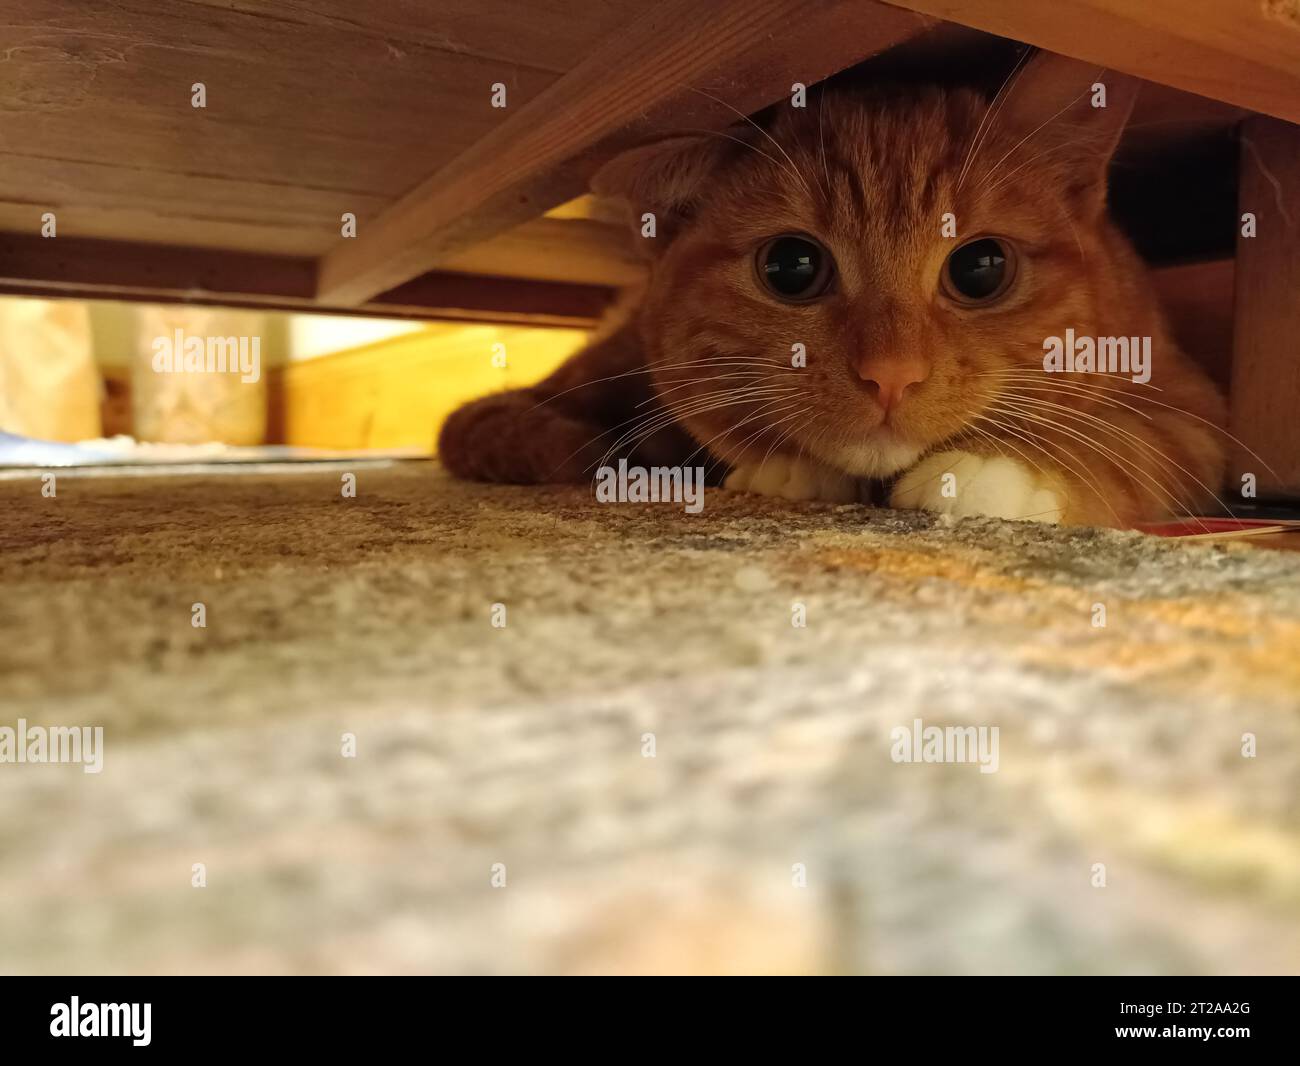 Adorable chaton au gingembre se cachant sous une armoire avec espace de copie. Concept de chaton adorable, mignon, timide et caché. Petit chat effrayé de sortir de sous le lit Banque D'Images